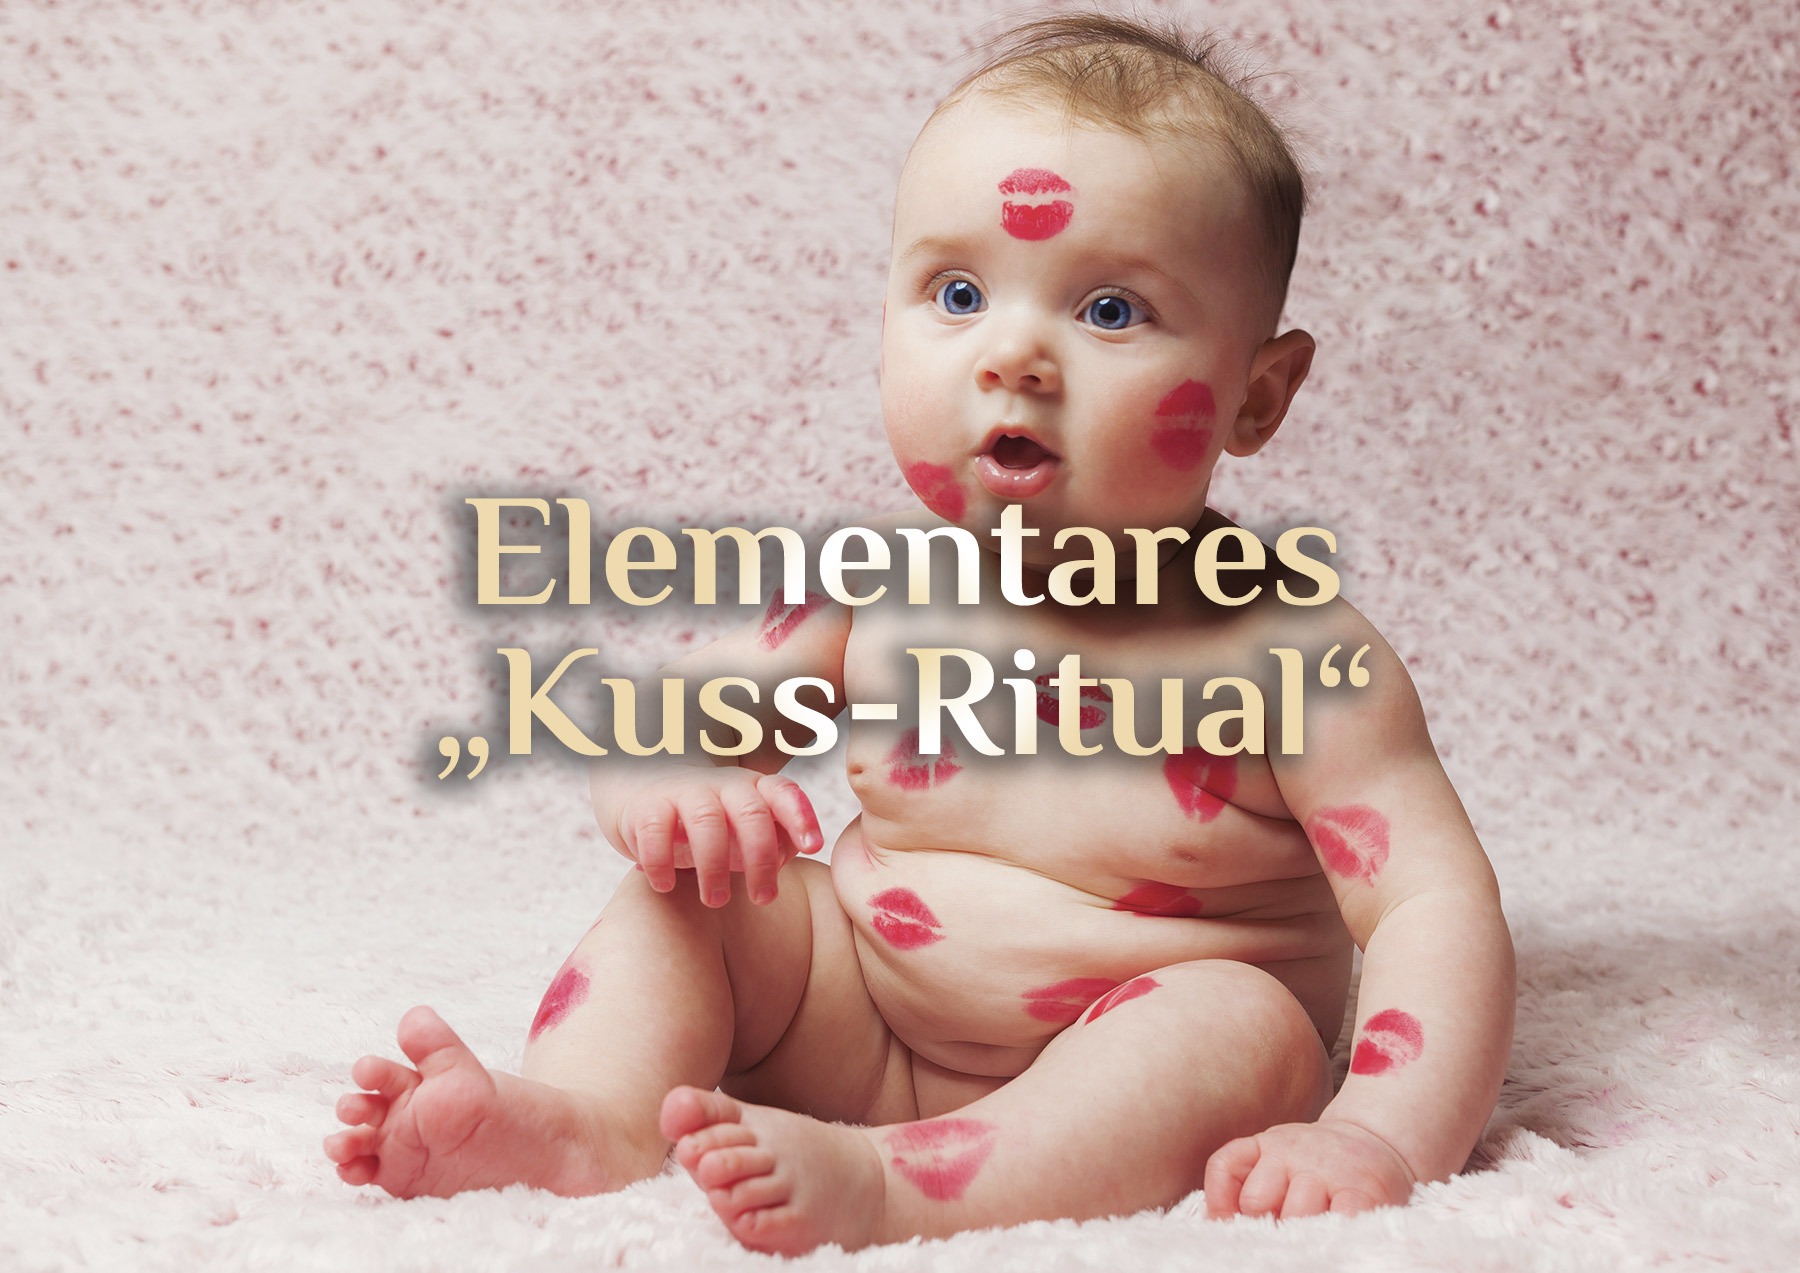 Kuss-Ritual 💋 Elementarer Kuss 💋 Liebe statt Hass